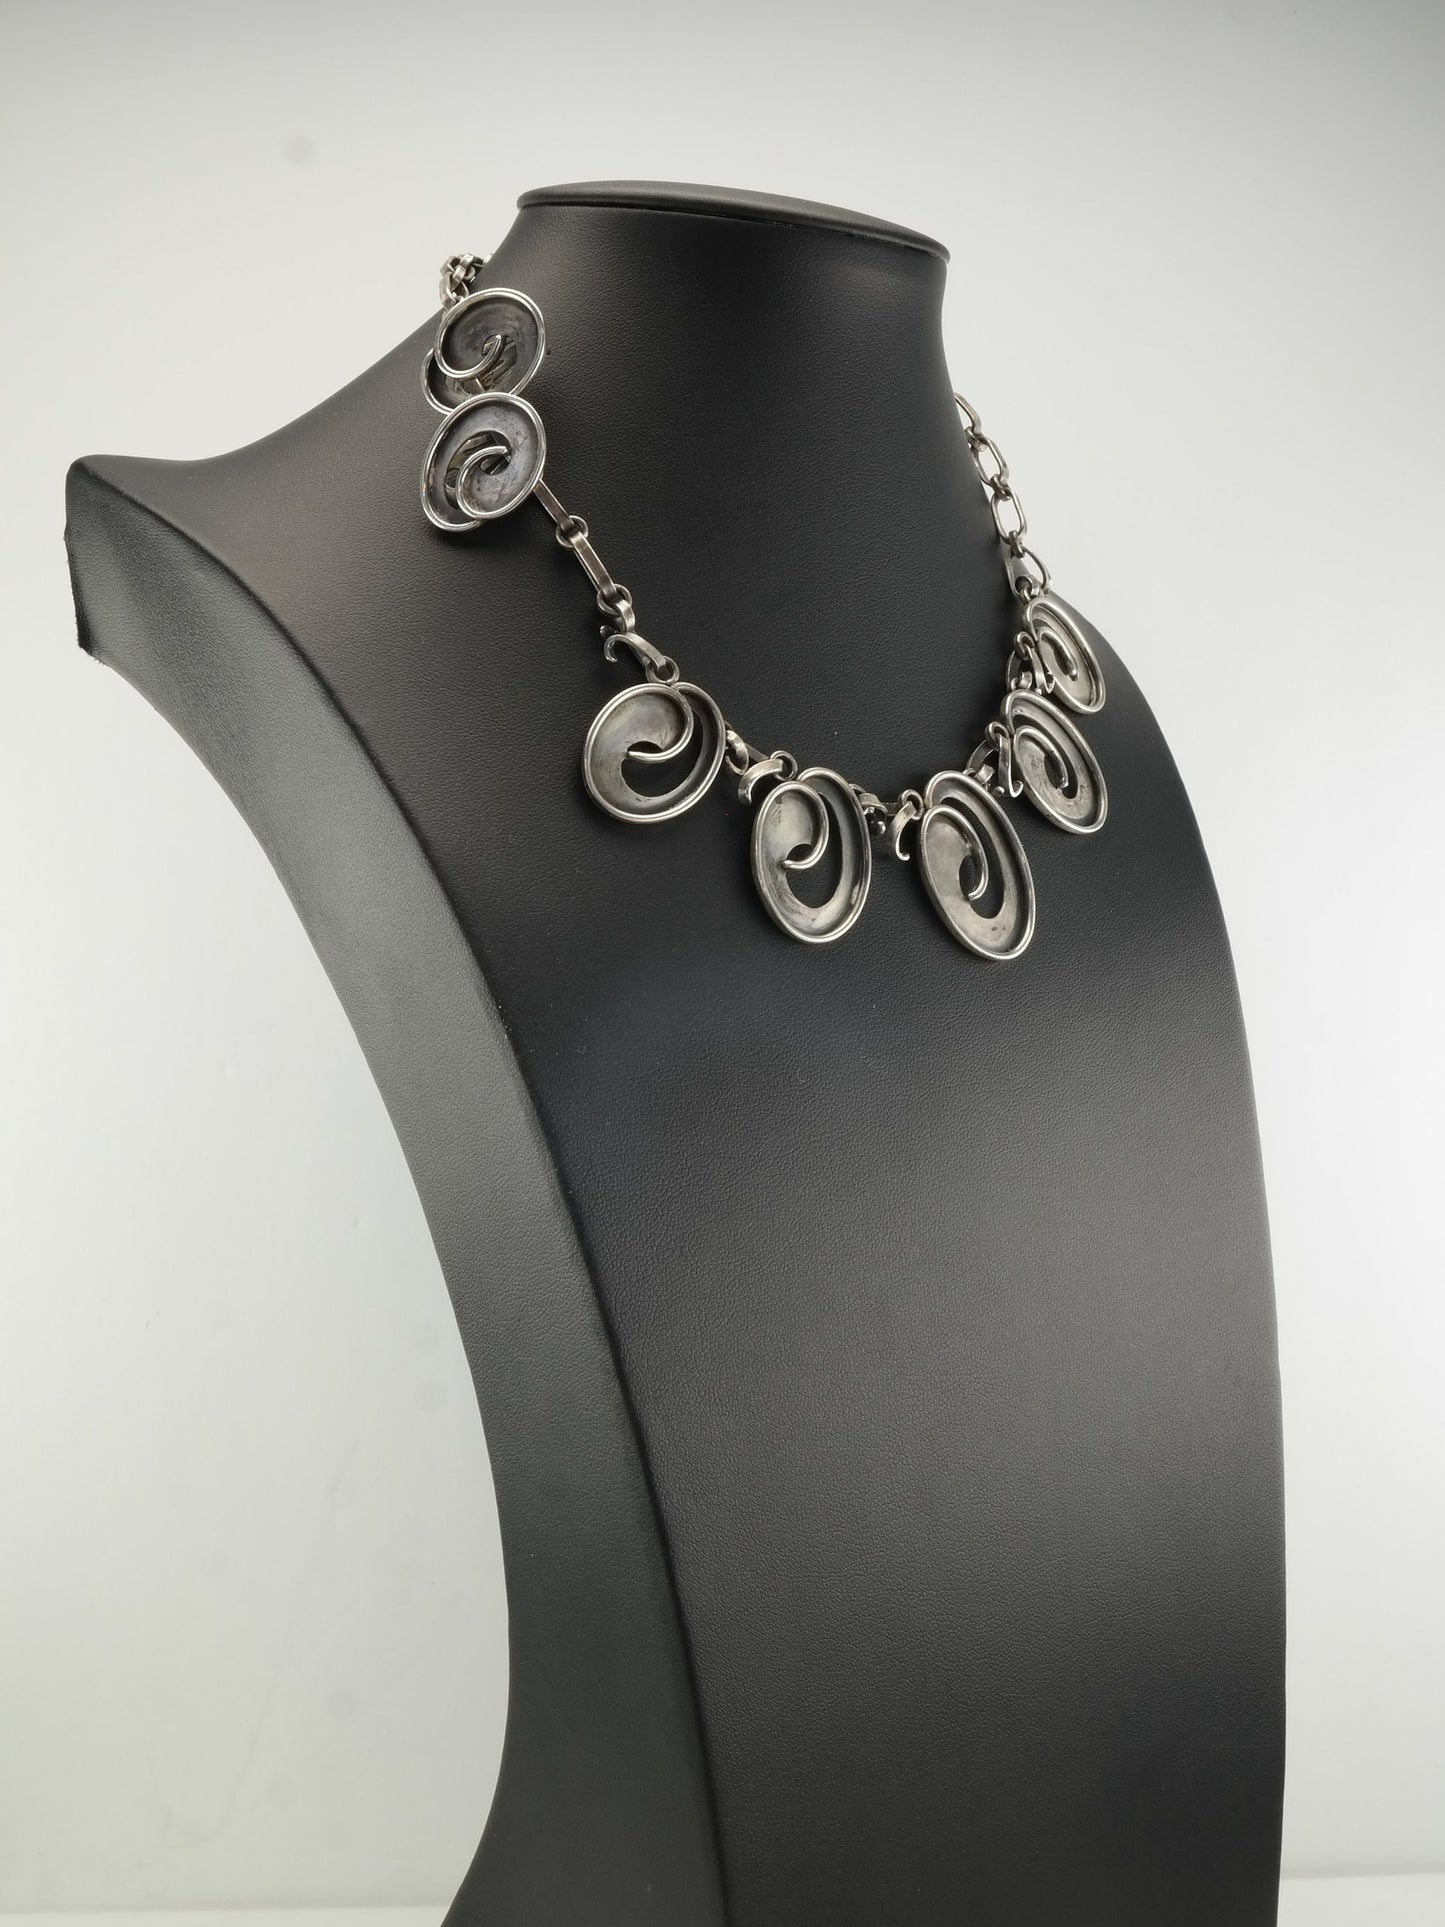 Modernist RWW Sterling Silver Necklace Earrings Jewelry Set